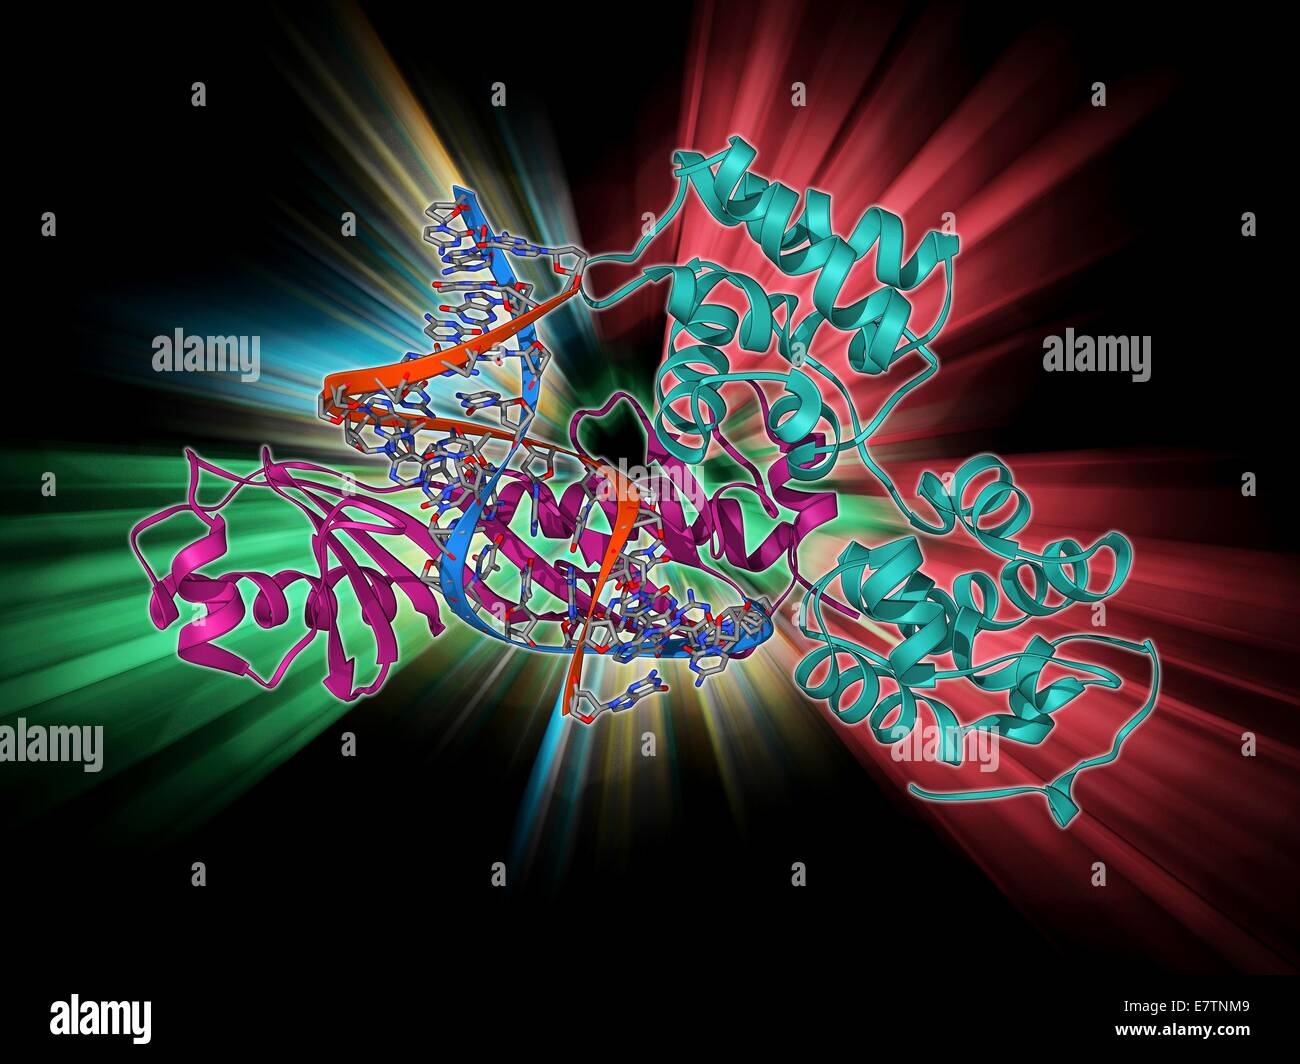 Caja TATA-binding protein complex. Mostrando un modelo molecular de  levaduras caja TATA-Binding Protein (TBP) complejado con una hebra de ADN  (ácido desoxirribonucleico, rojo y azul) y el factor de transcripción IIB.  TBP